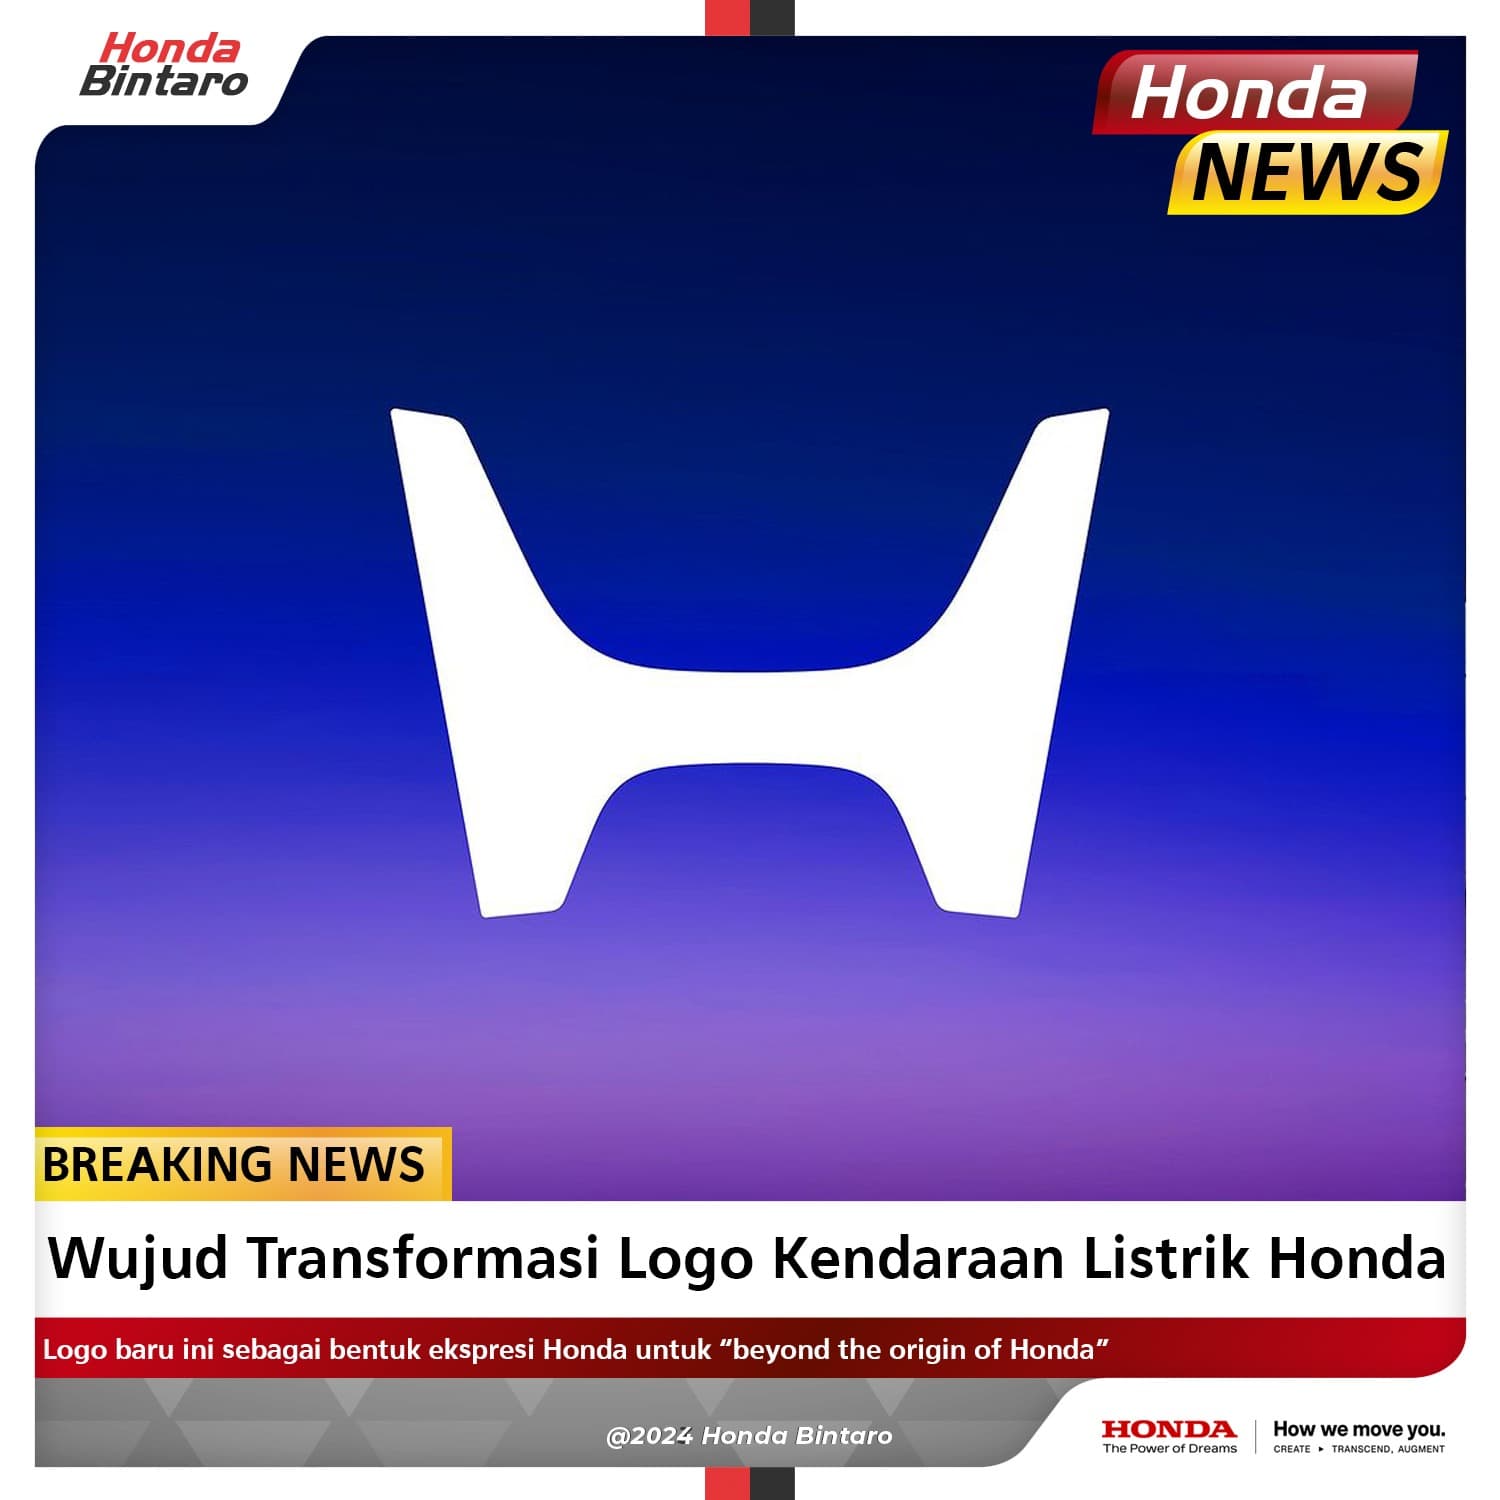 Wujud Transformasi Logo Kendaraan Listrik Honda